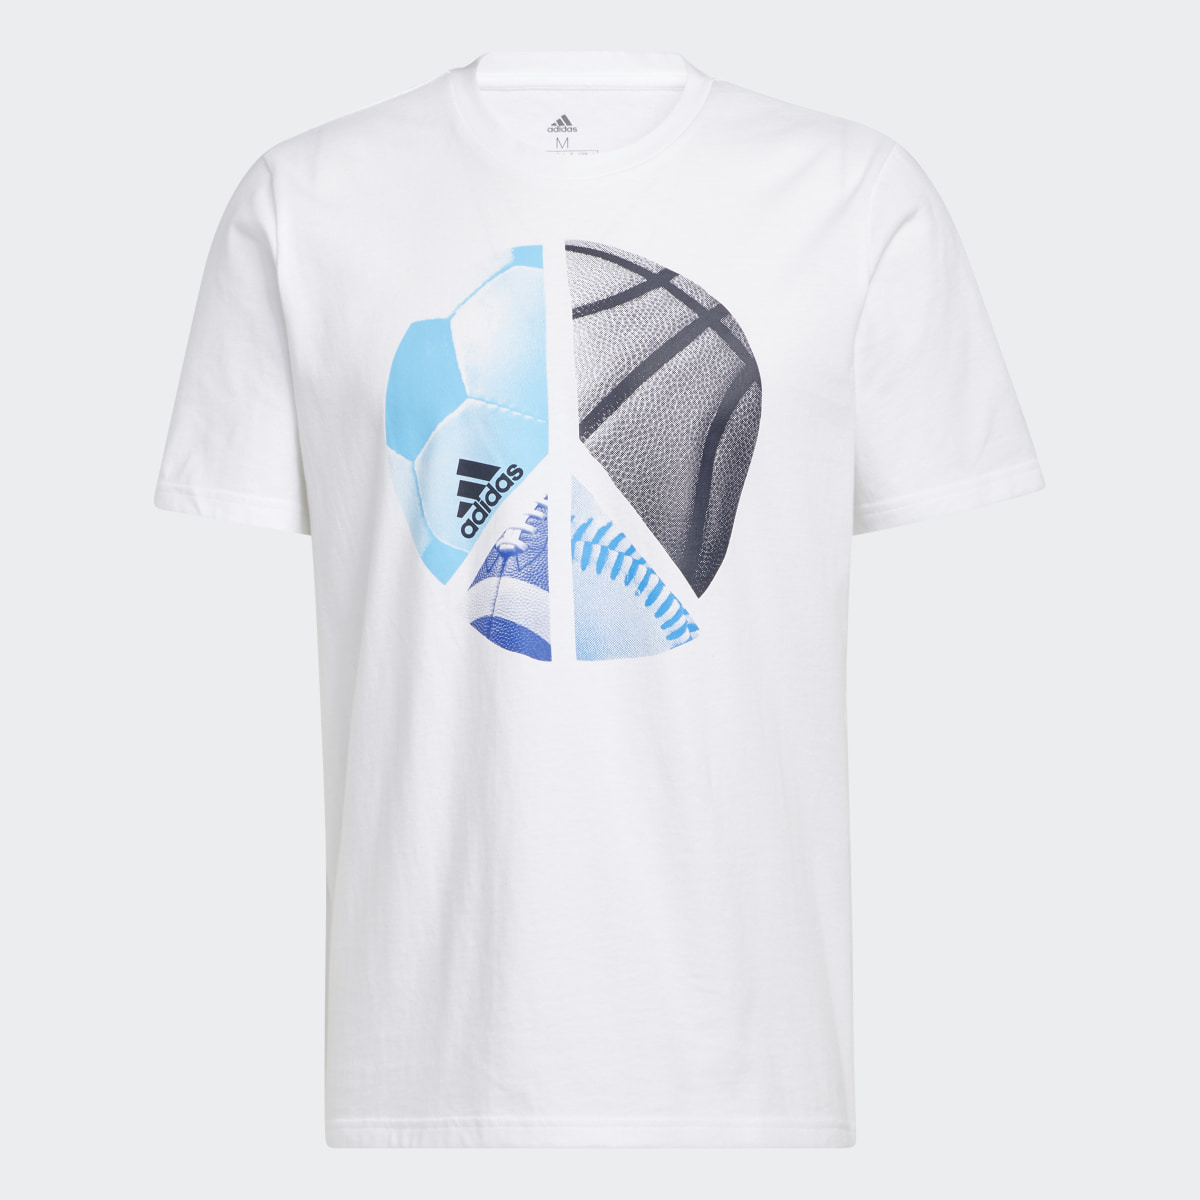 Adidas Camiseta Multiplicity Graphic. 5